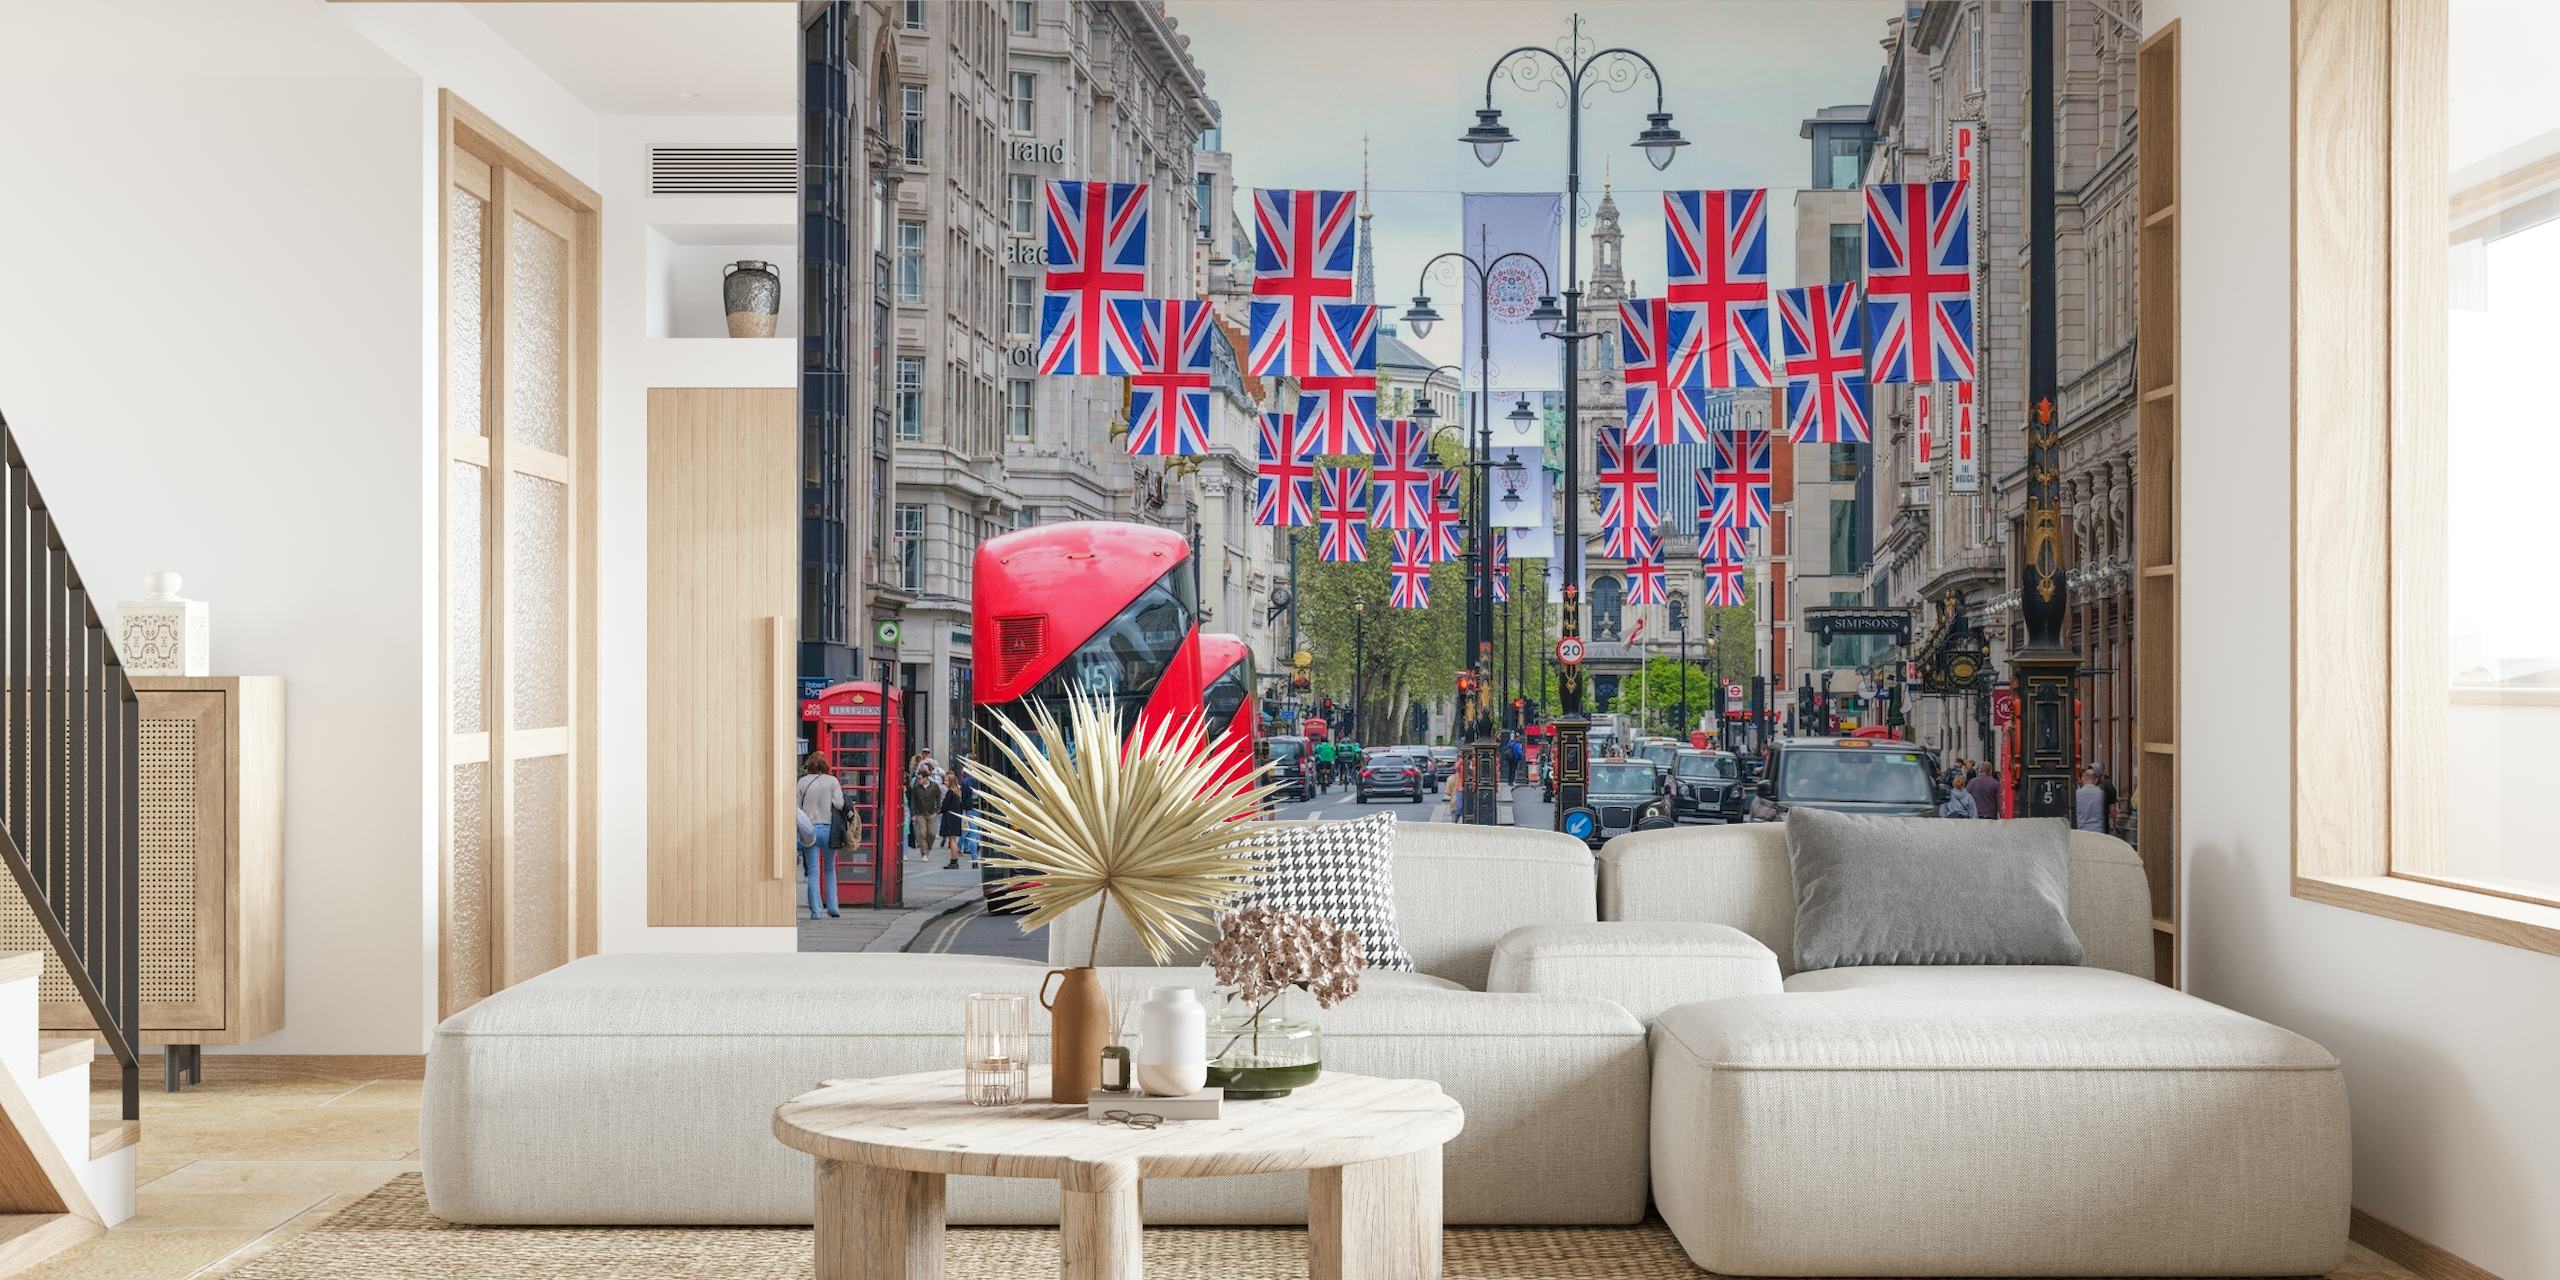 Straatbeeld in Londen met Union Jack-vlaggen en rode dubbeldekkerbusmuurschildering